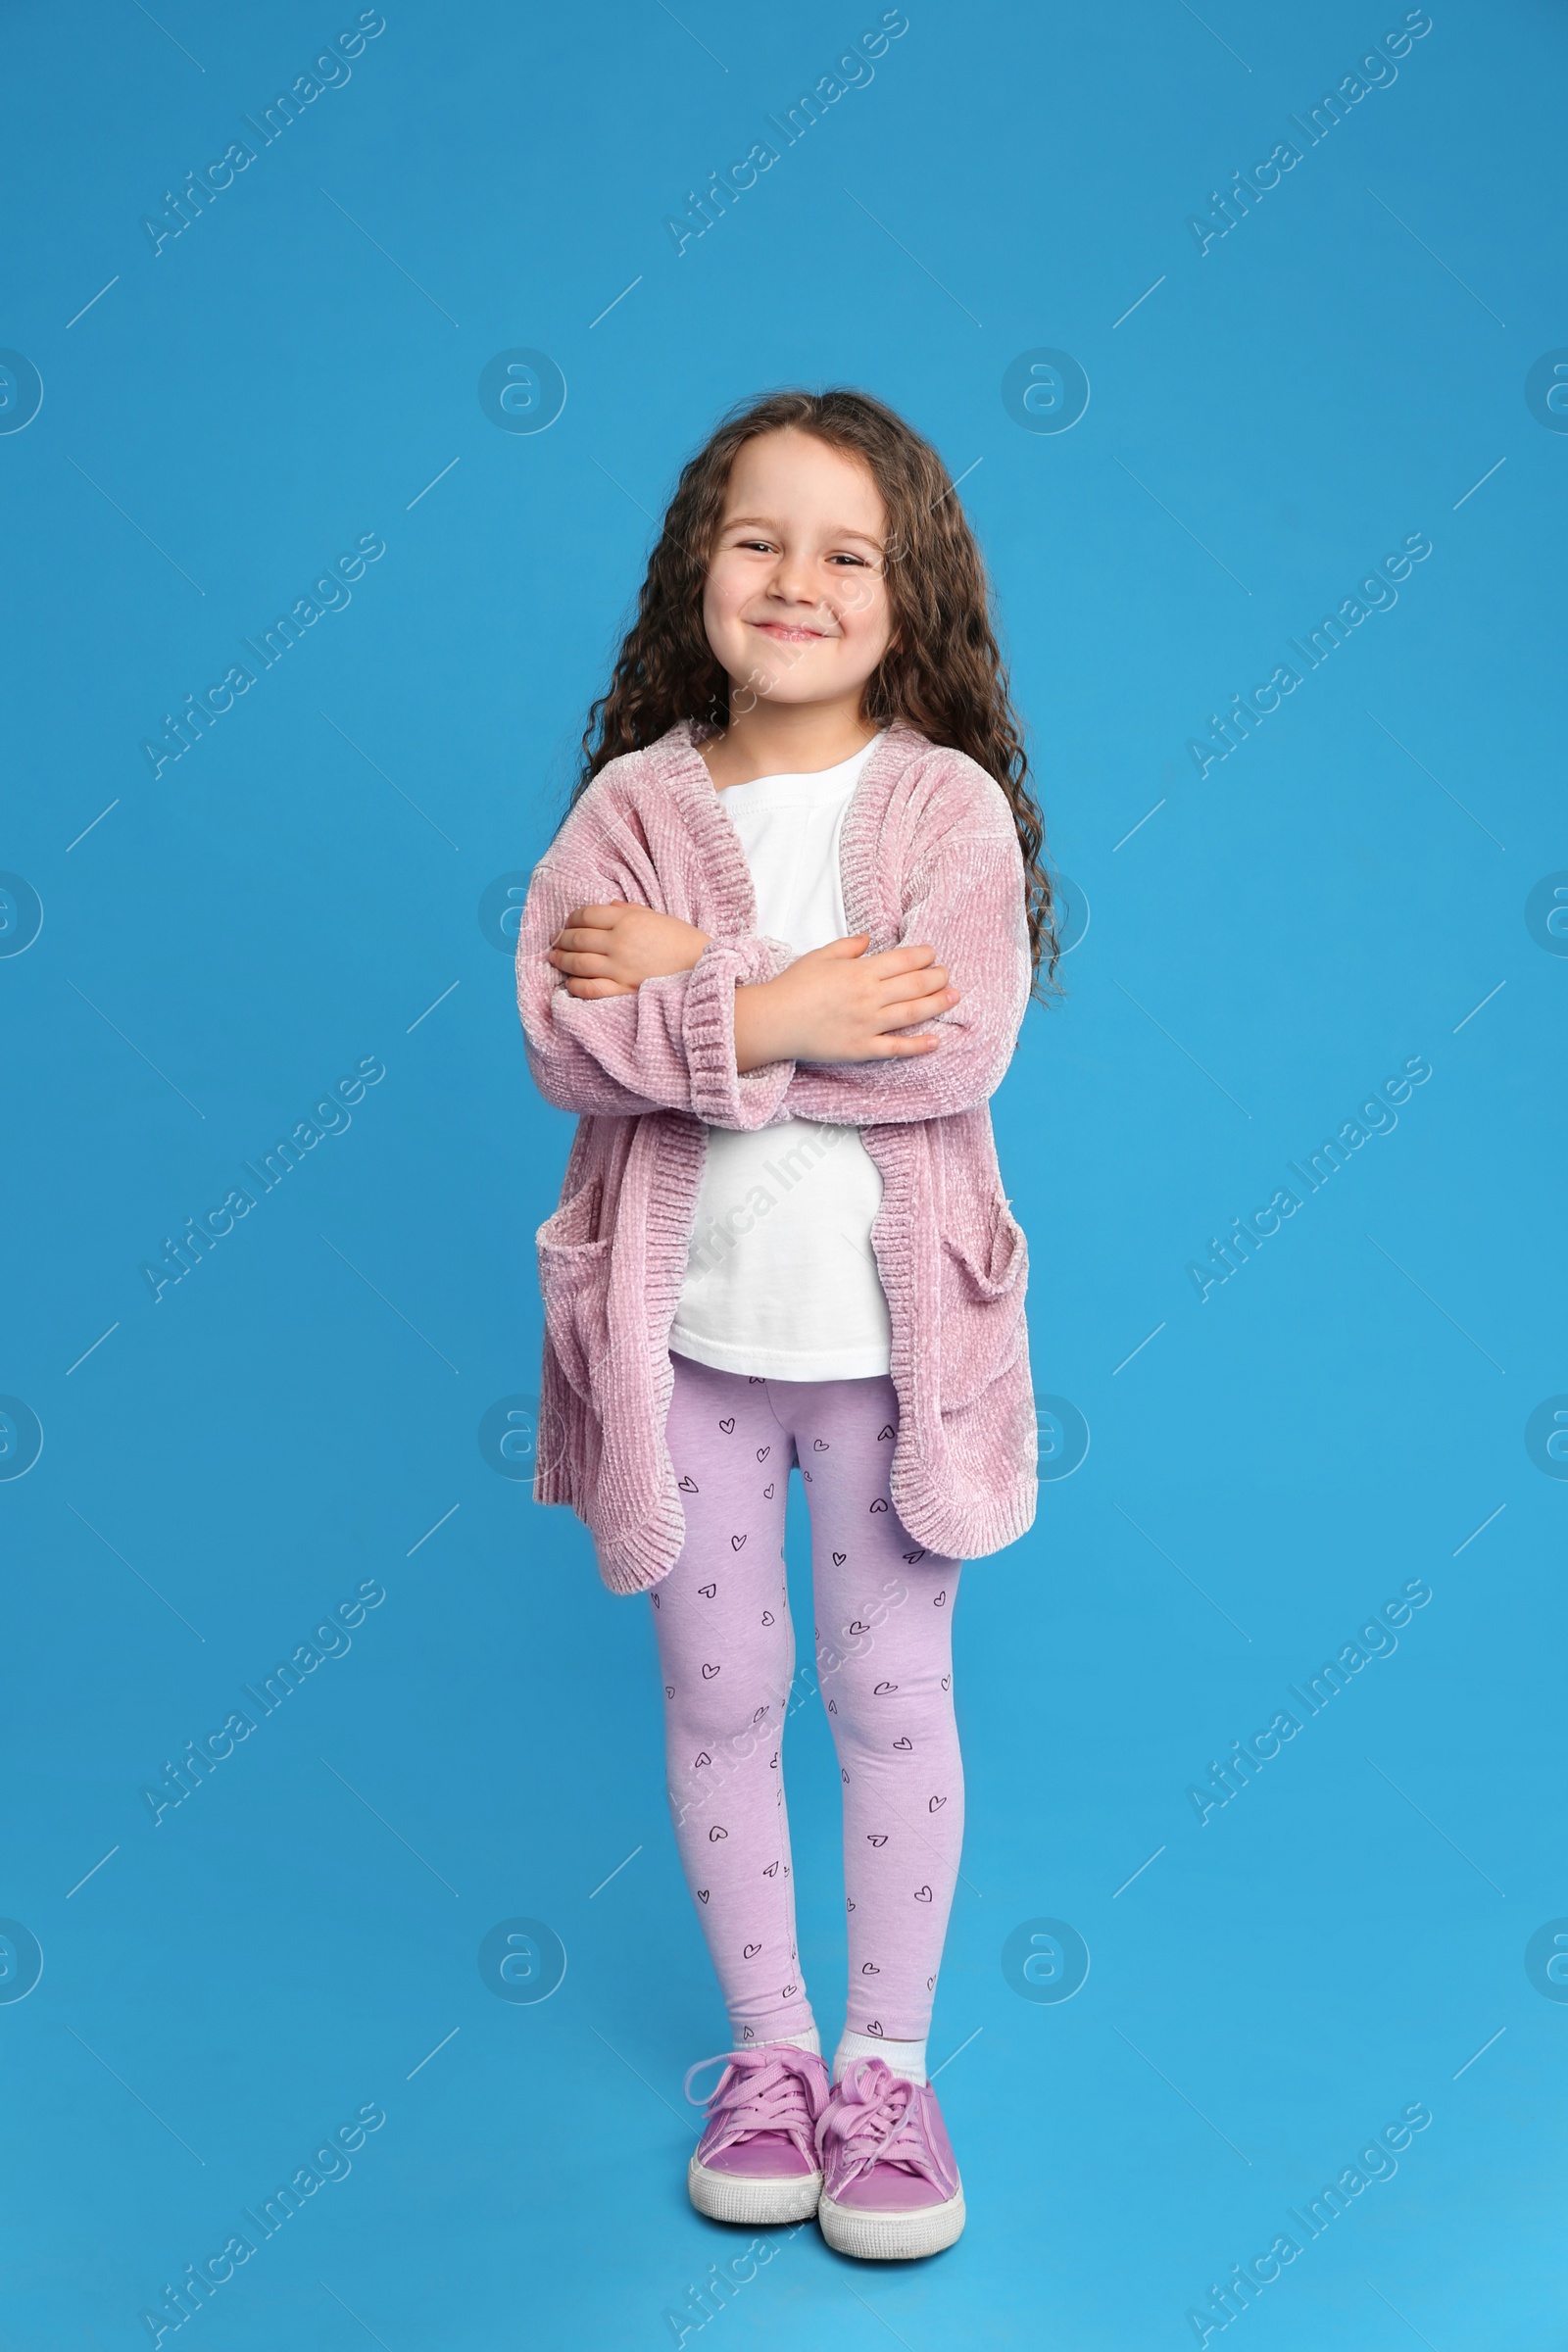 Photo of Full length portrait of cute little girl on light blue background